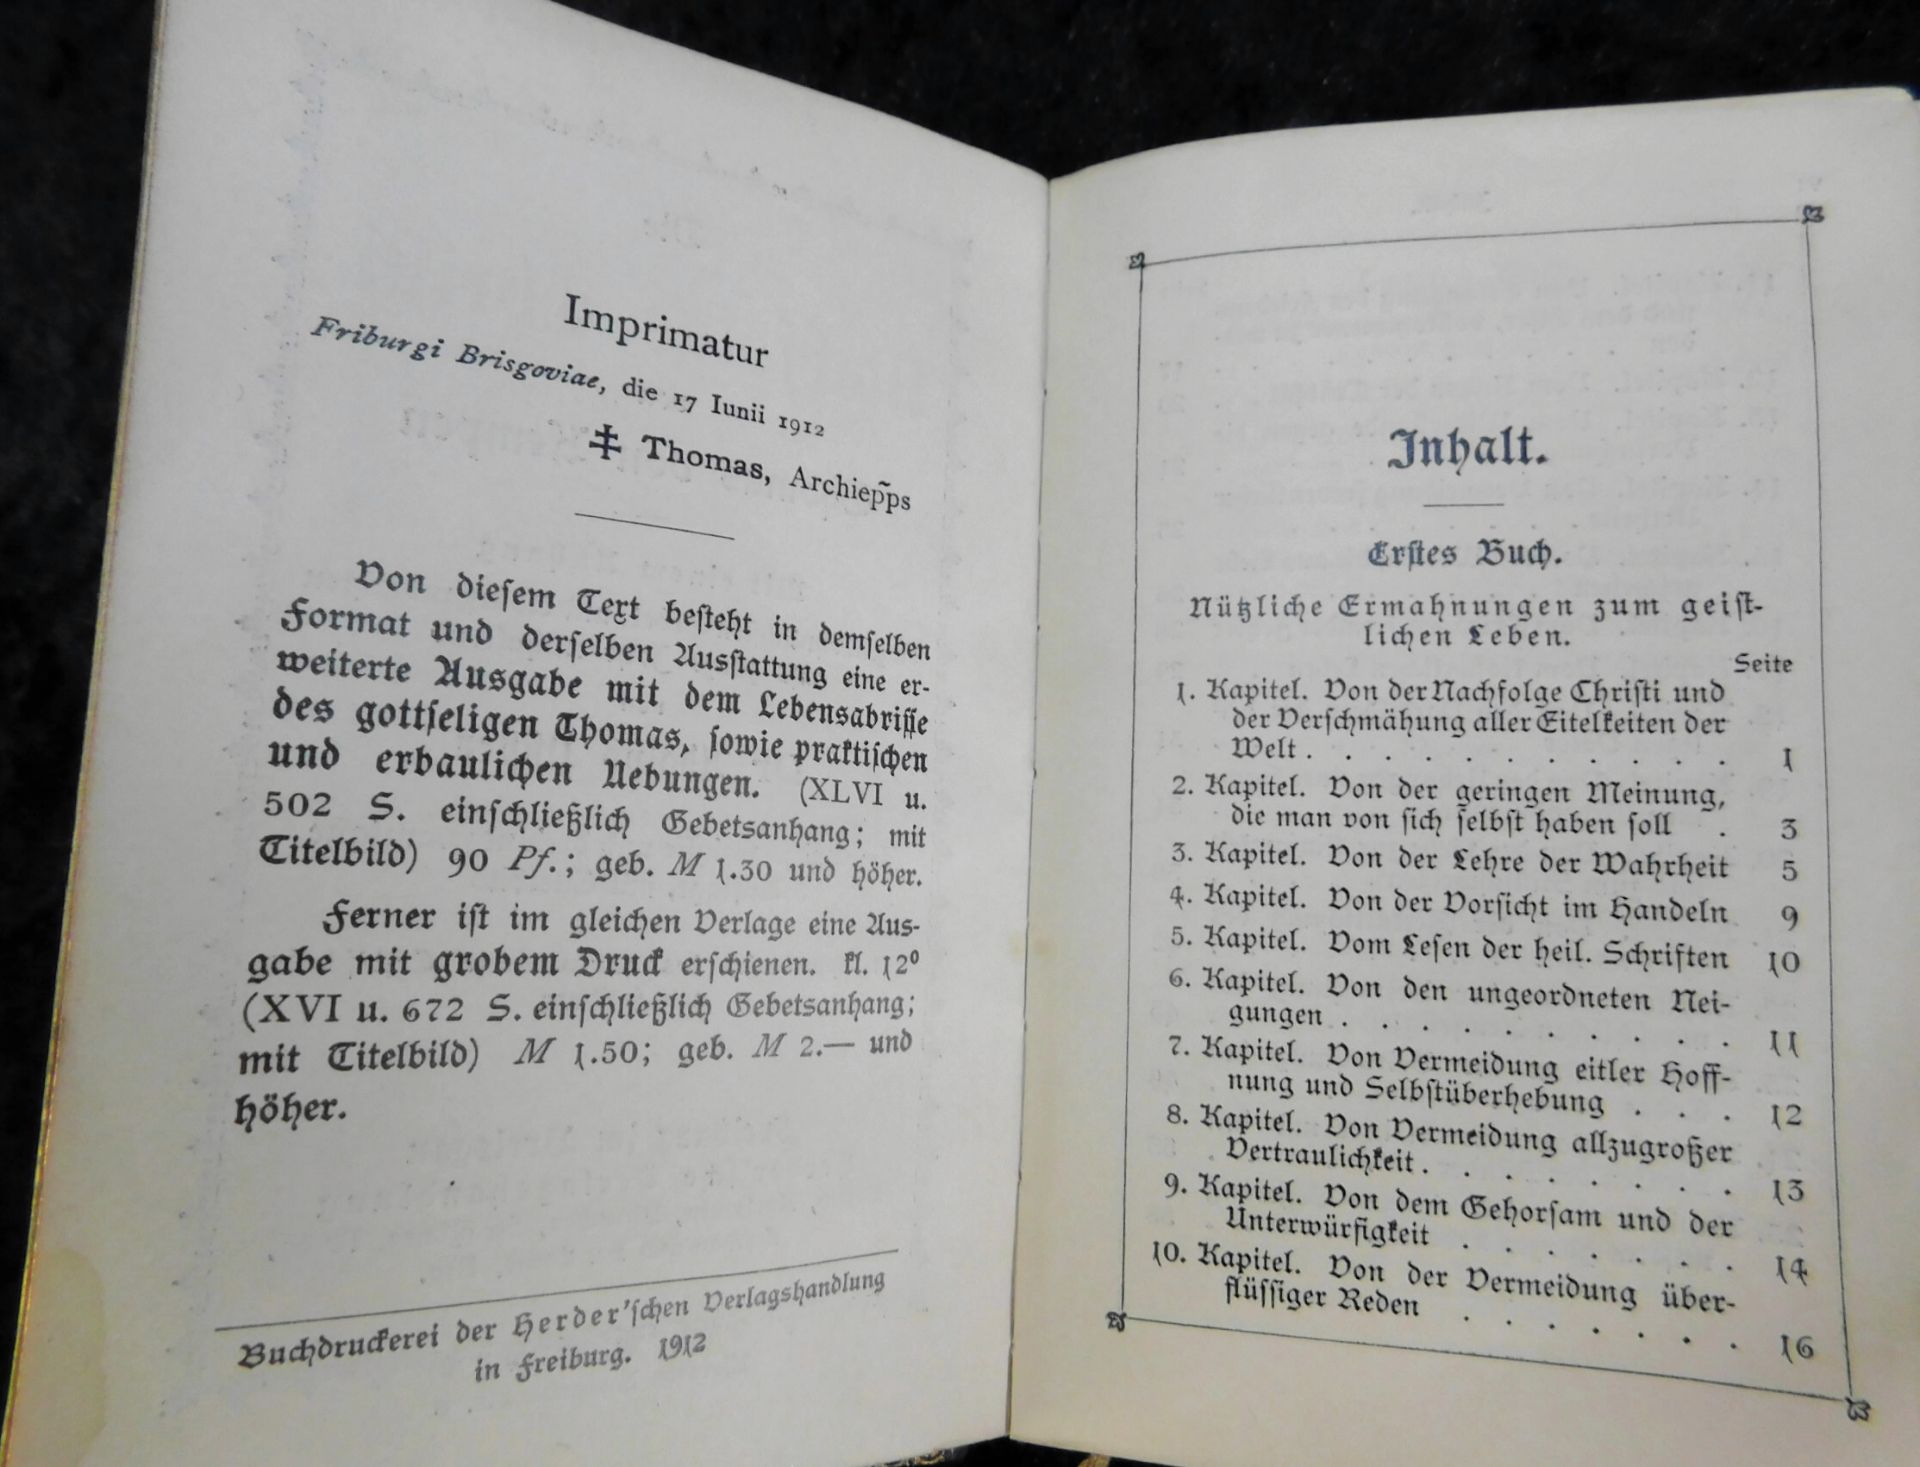 3 Gebetbücher, Nachf. Christi, 1912, Gebet u. gesangbuch Erzbistum Köln, 1935, Kath. Gebetbuch - Bild 3 aus 7